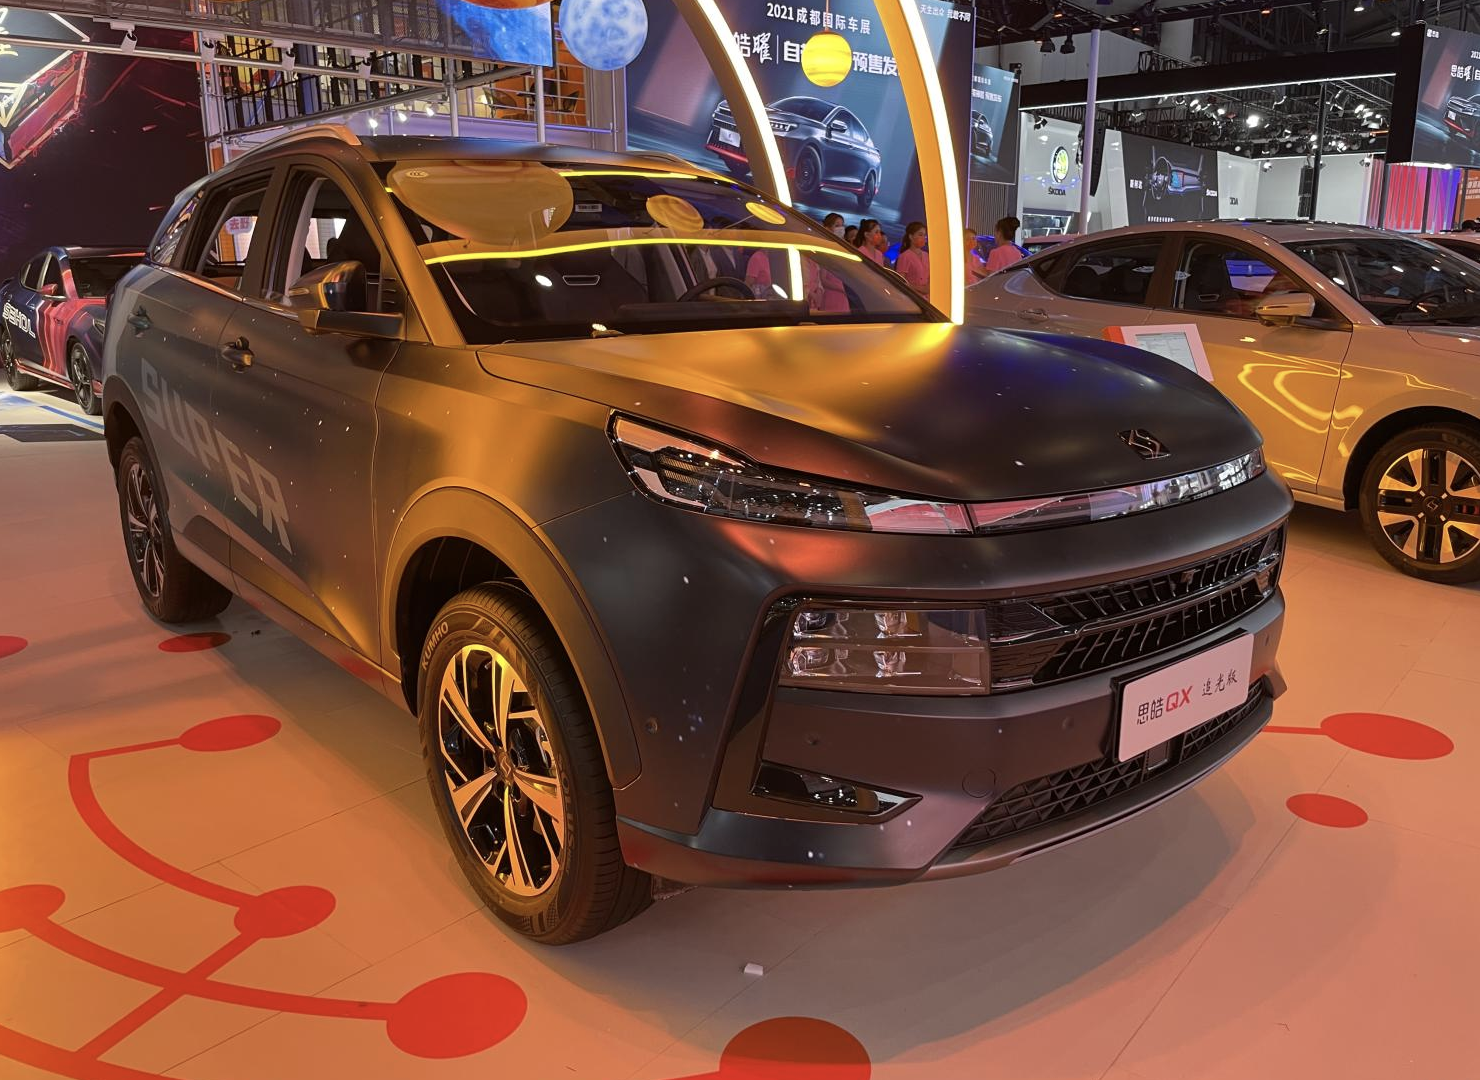 售价13.49万元/外观升级，思皓QX追光版车型正式上市